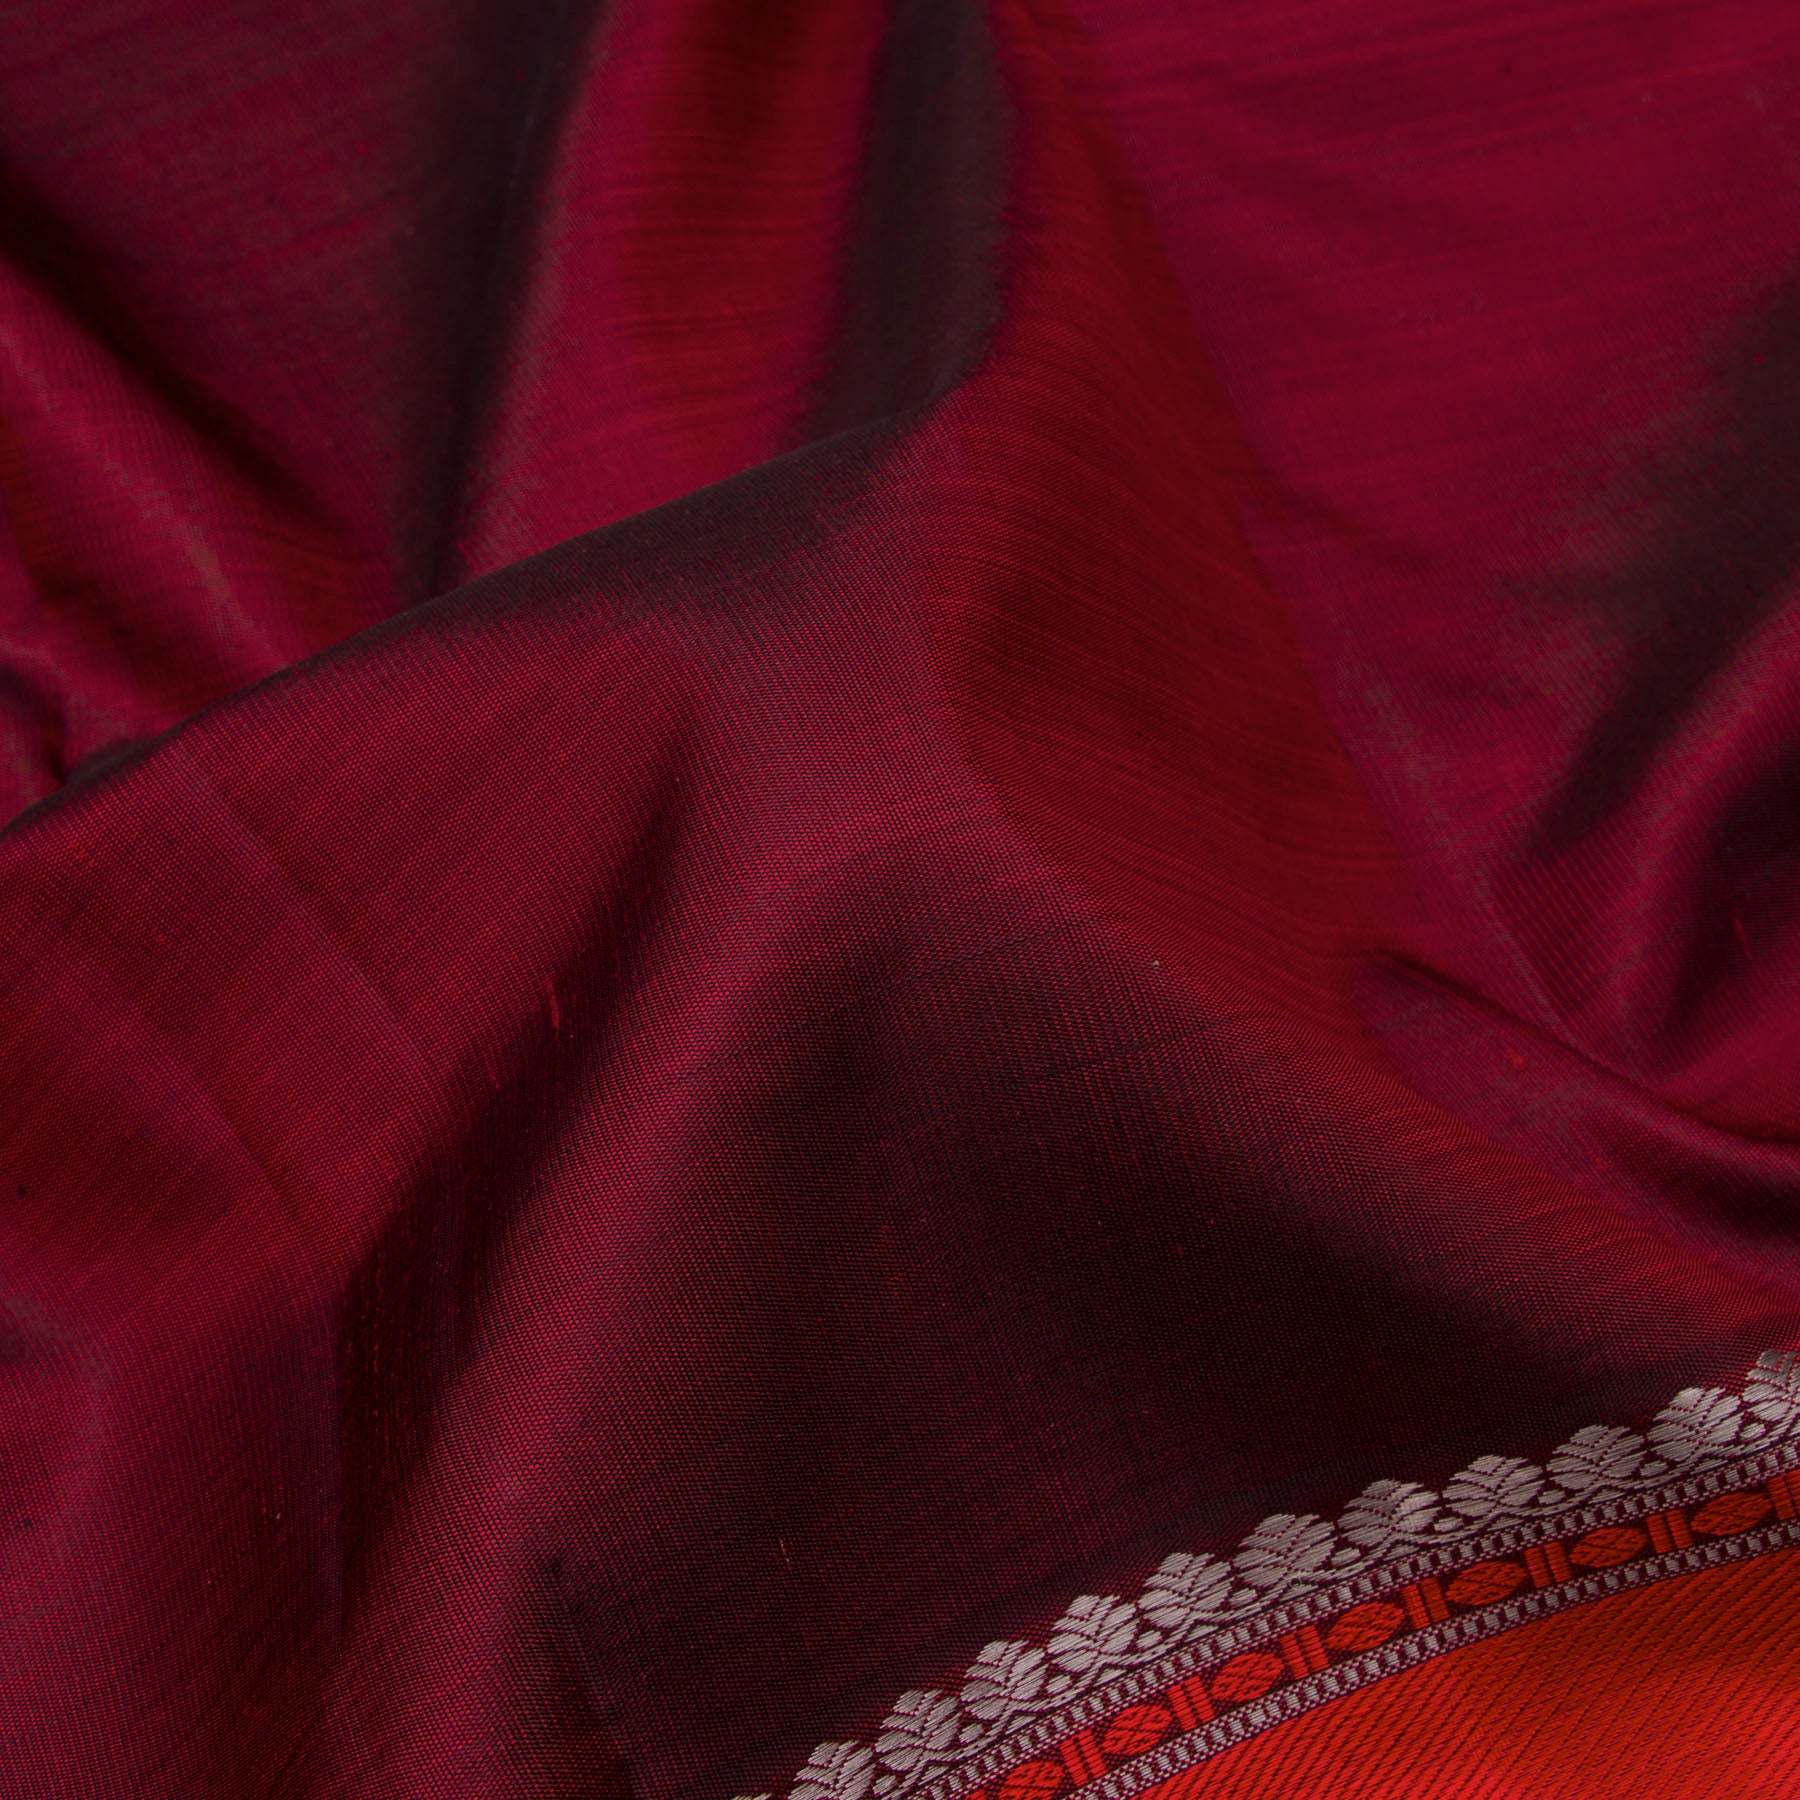 Kanakavalli Kanjivaram Silk Sari 23-599-HS001-03169 - Fabric View